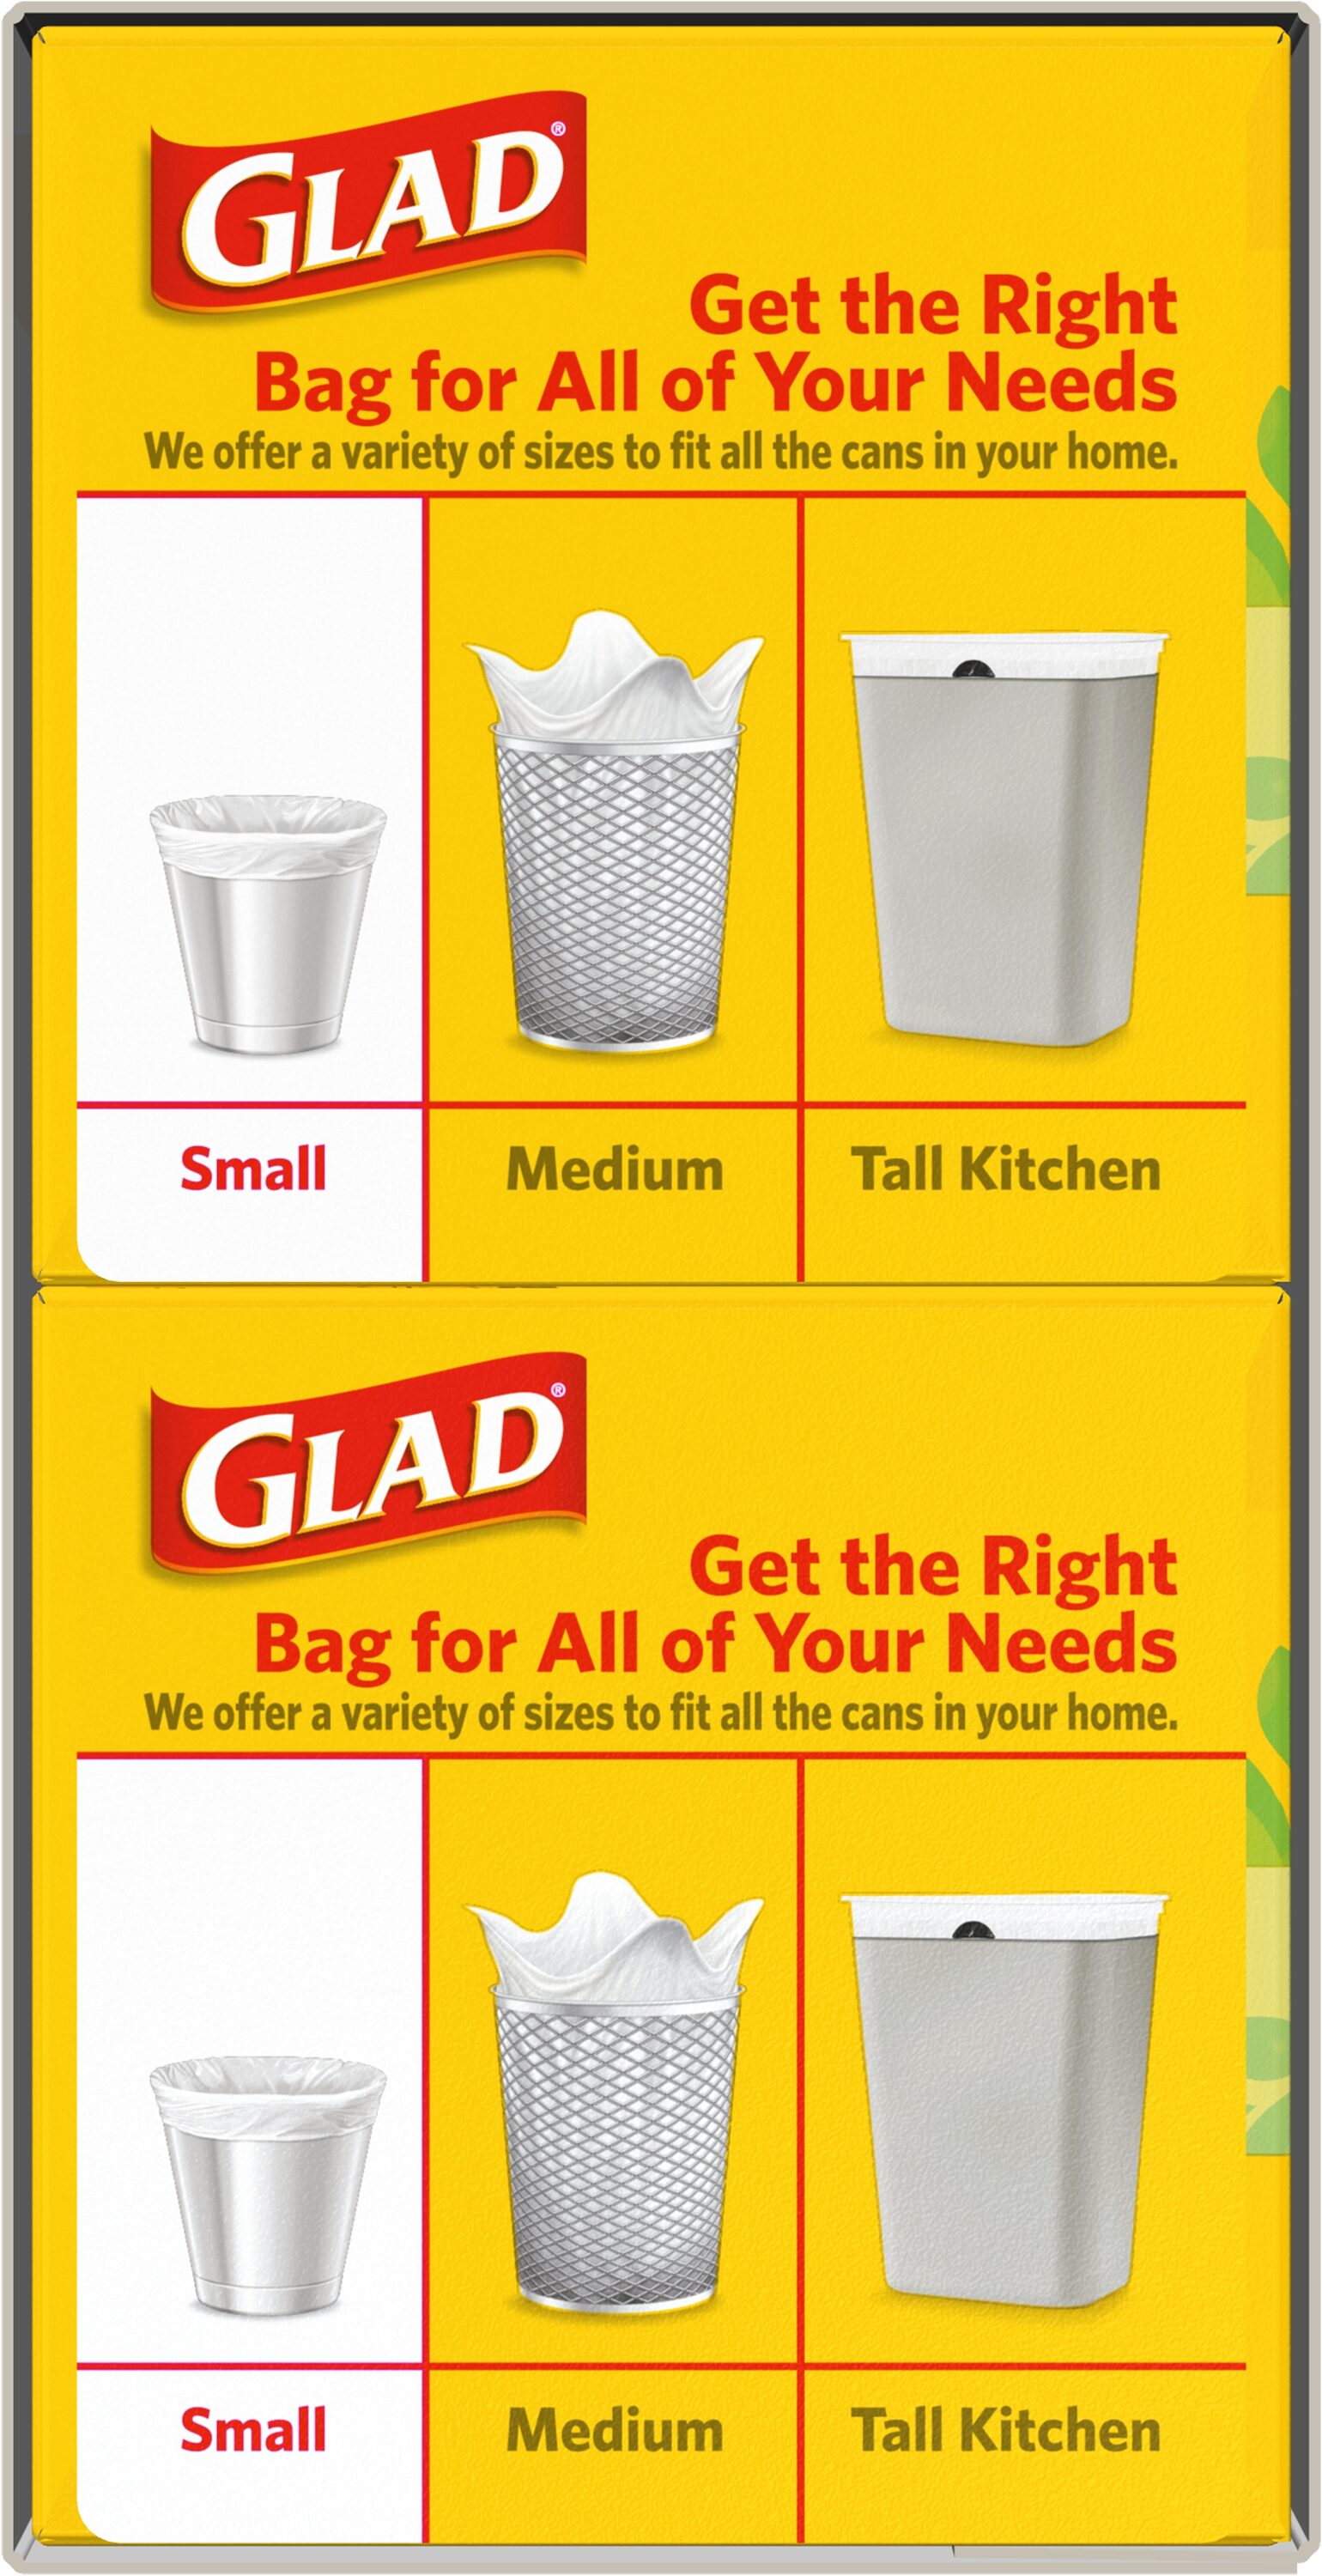 Glad Small Quick Tie Trash Bags - Gain Original - 4 Gallon/52ct in